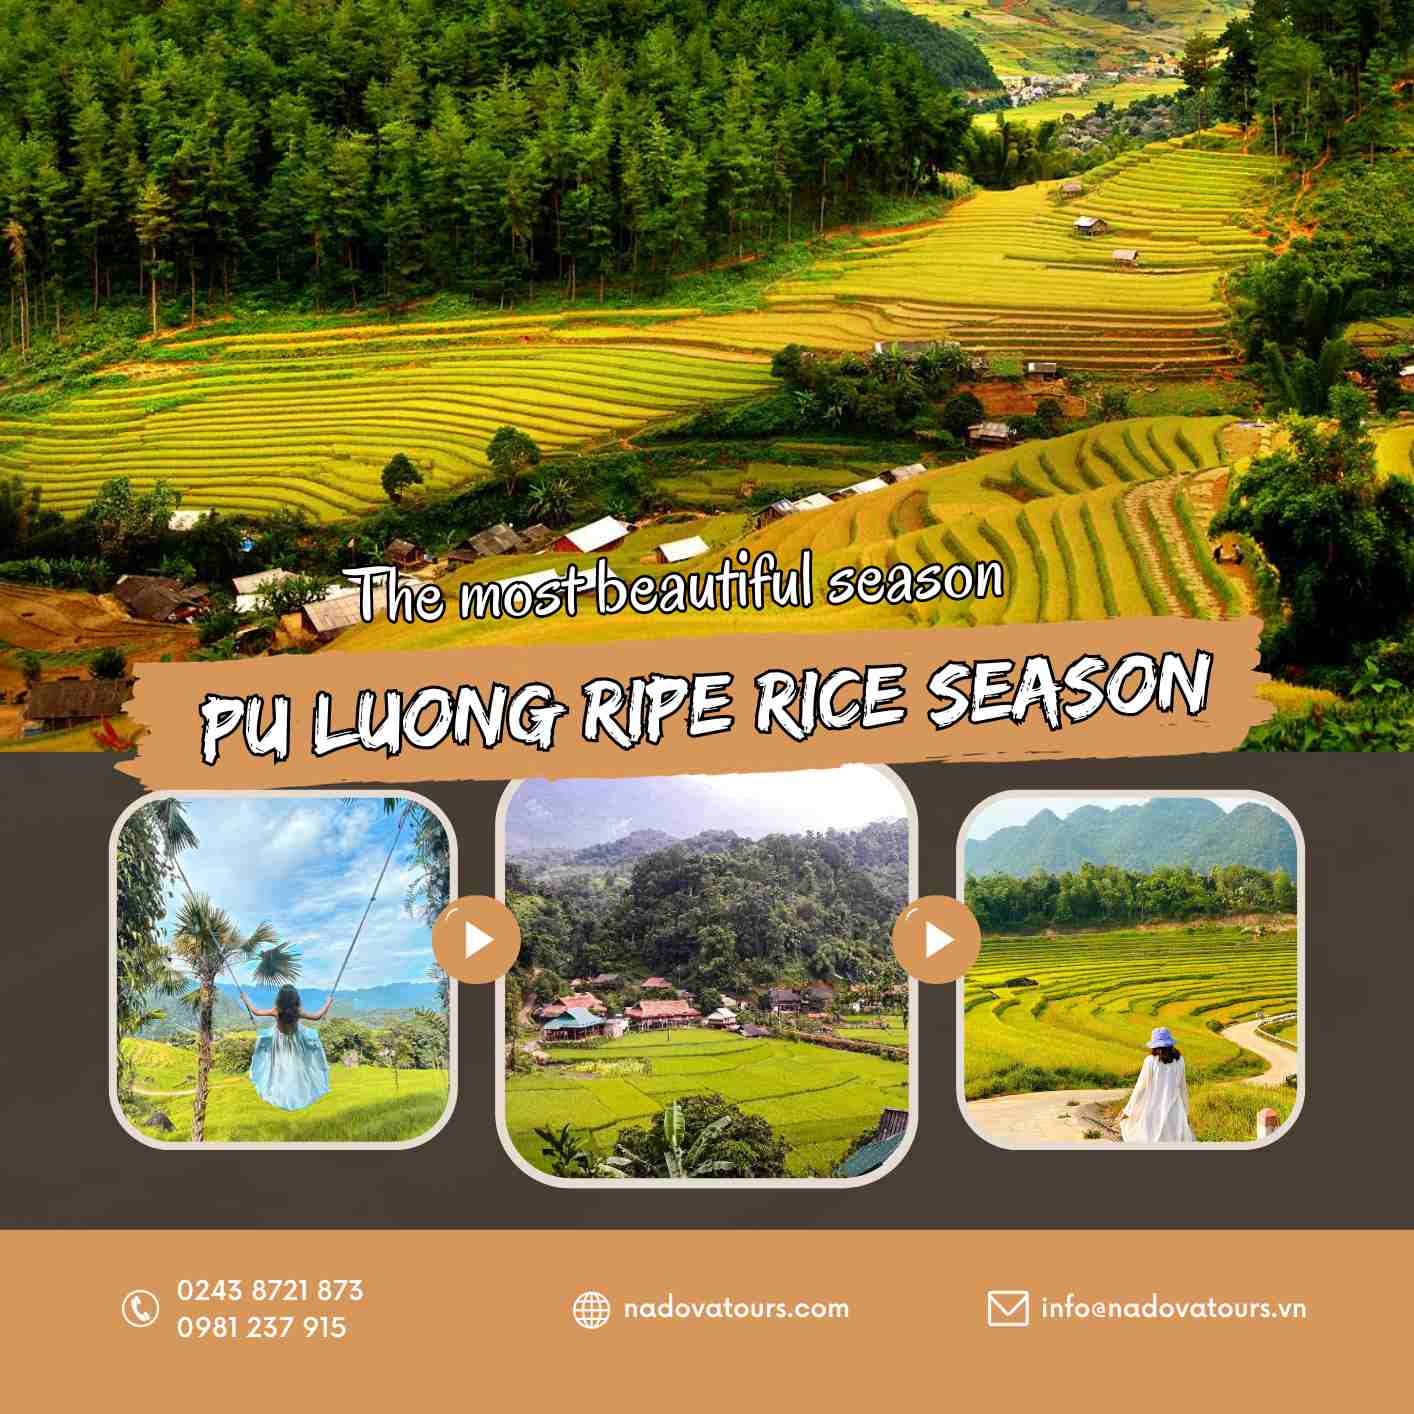 Pu Luong ripe rice season - The most beautiful season 